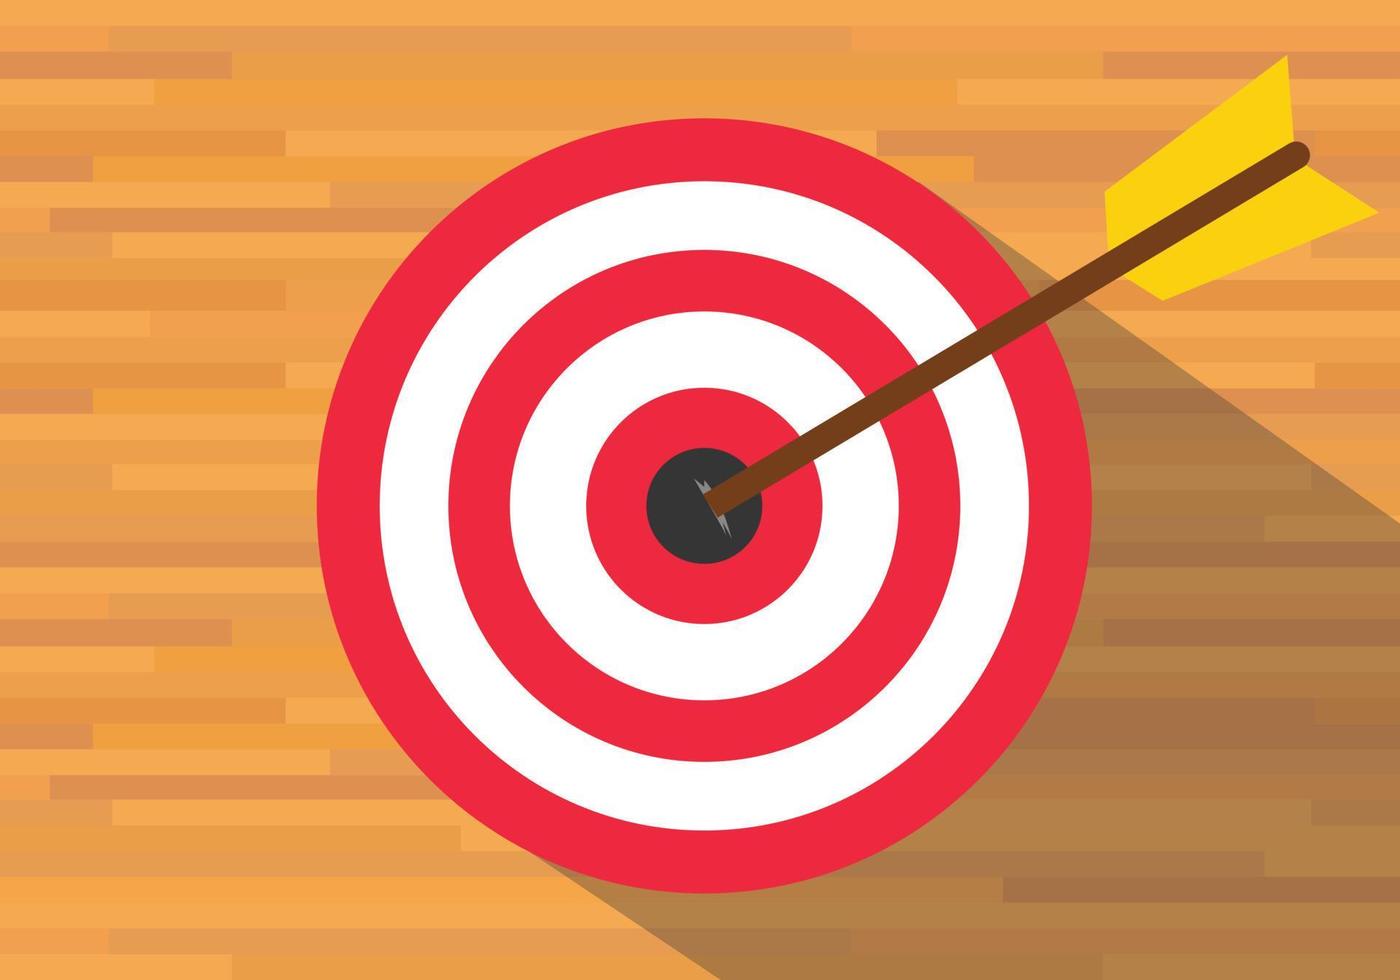 goals target board bullseye red vector flat